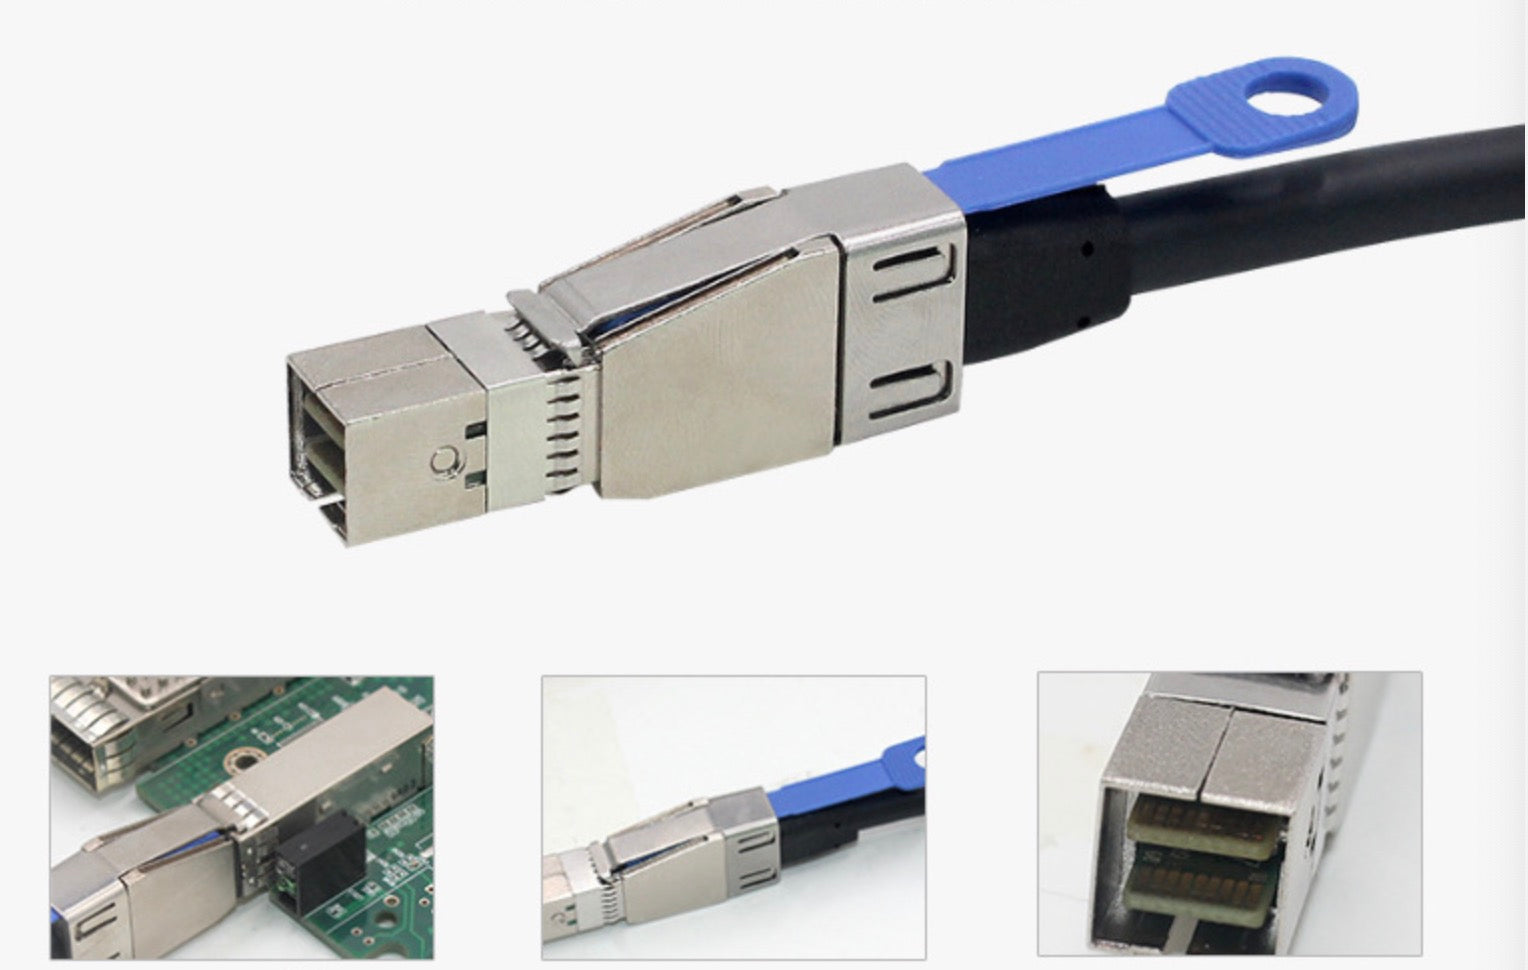 Mini SAS SFF 8644 to Mini SAS SFF 8644 External HD Data Cable 12Gbps 1m